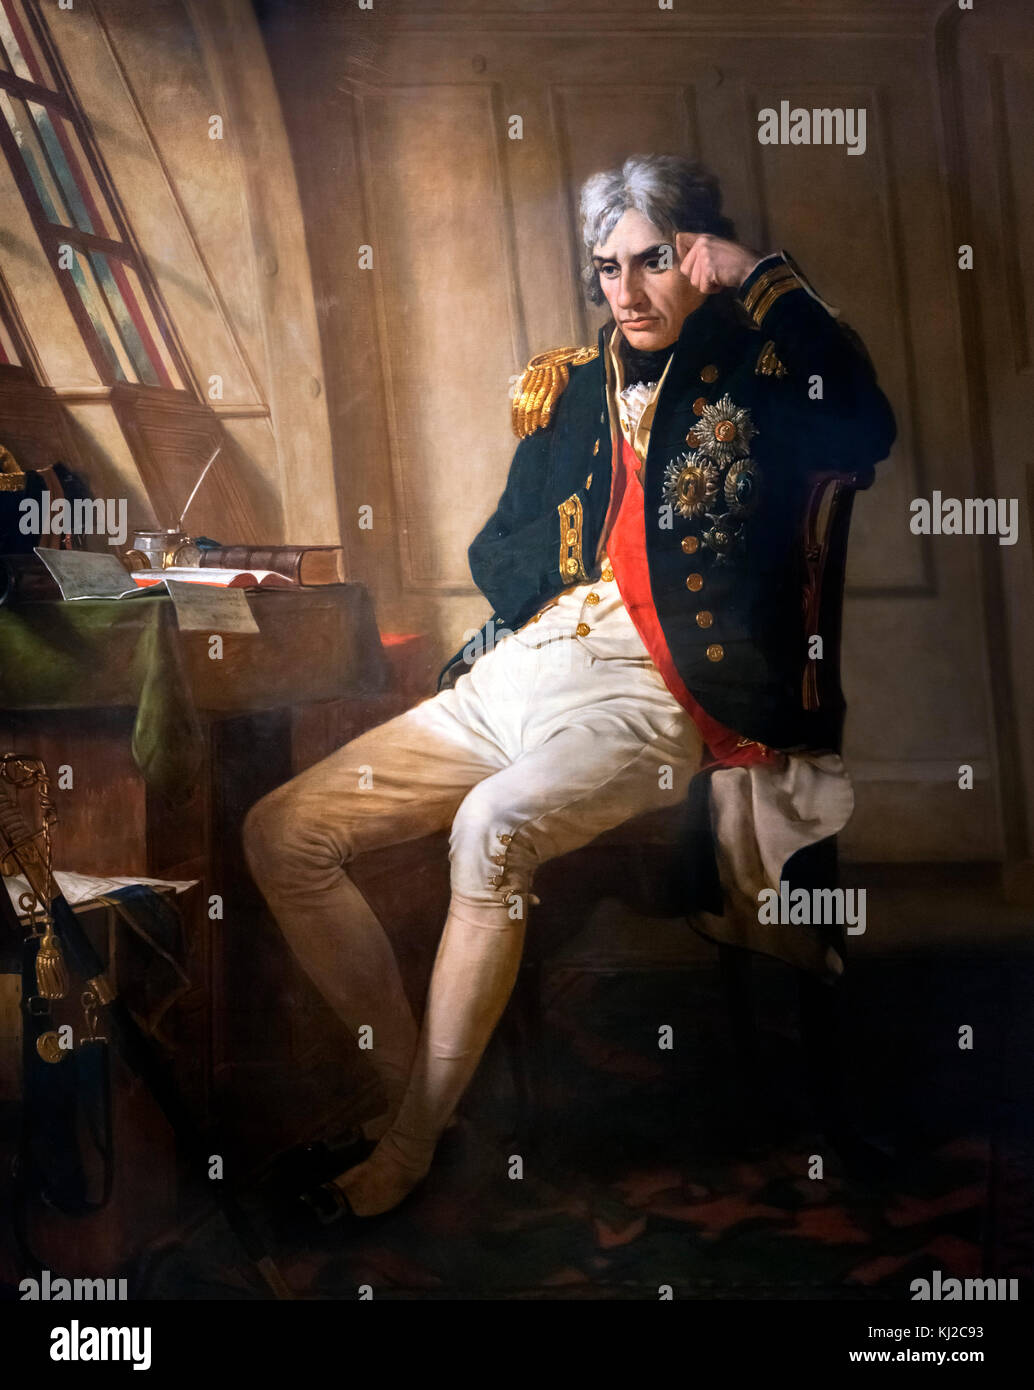 Vice Admiral Lord Nelson von Charles Lucy, Öl auf Leinwand, 1853. Das Porträt zeigt Horatio Nelson in seiner Kabine auf HMS Victory am Morgen der Schlacht von Trafalgar. Stockfoto